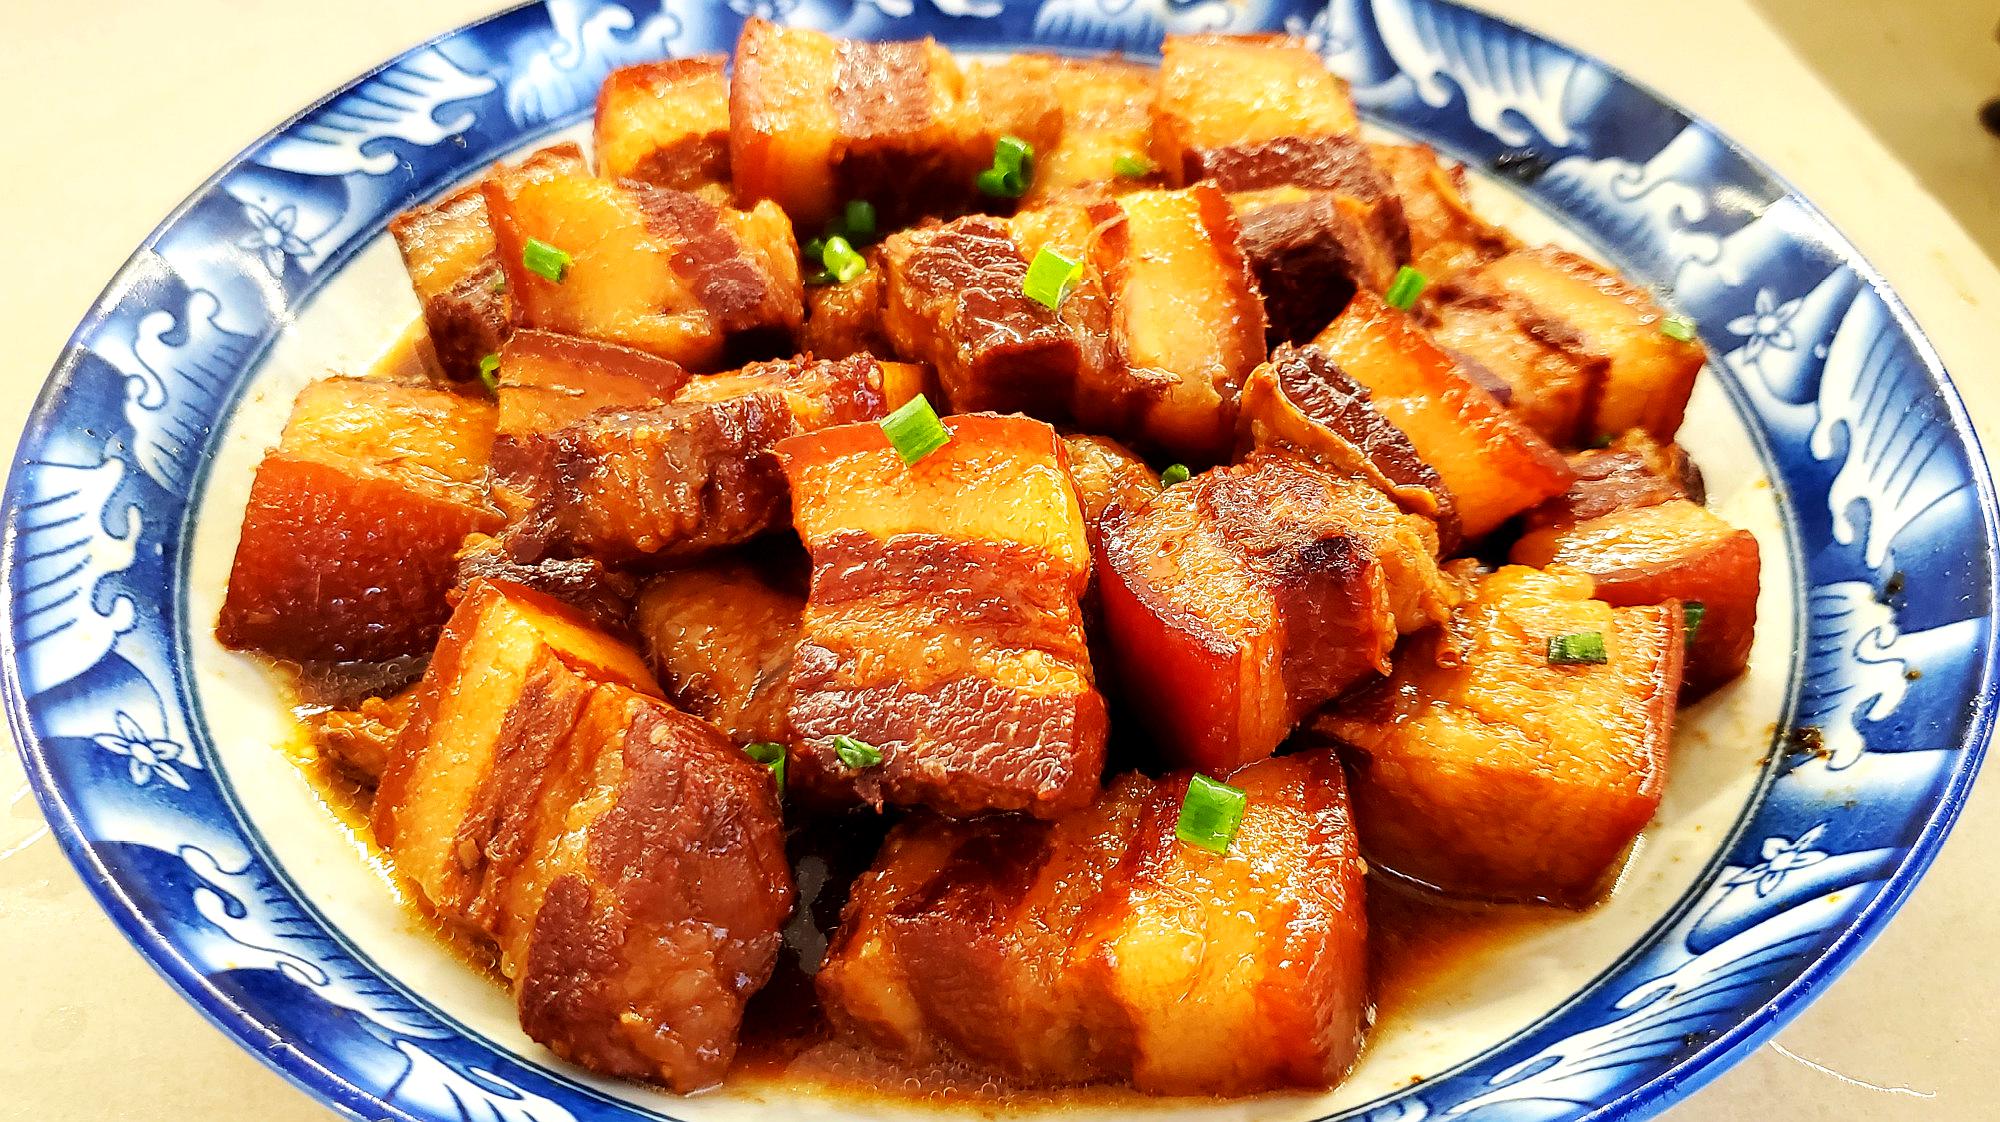 推荐六道家常菜的做法,麻婆豆腐嫩滑爽口,红烧肉入口即化